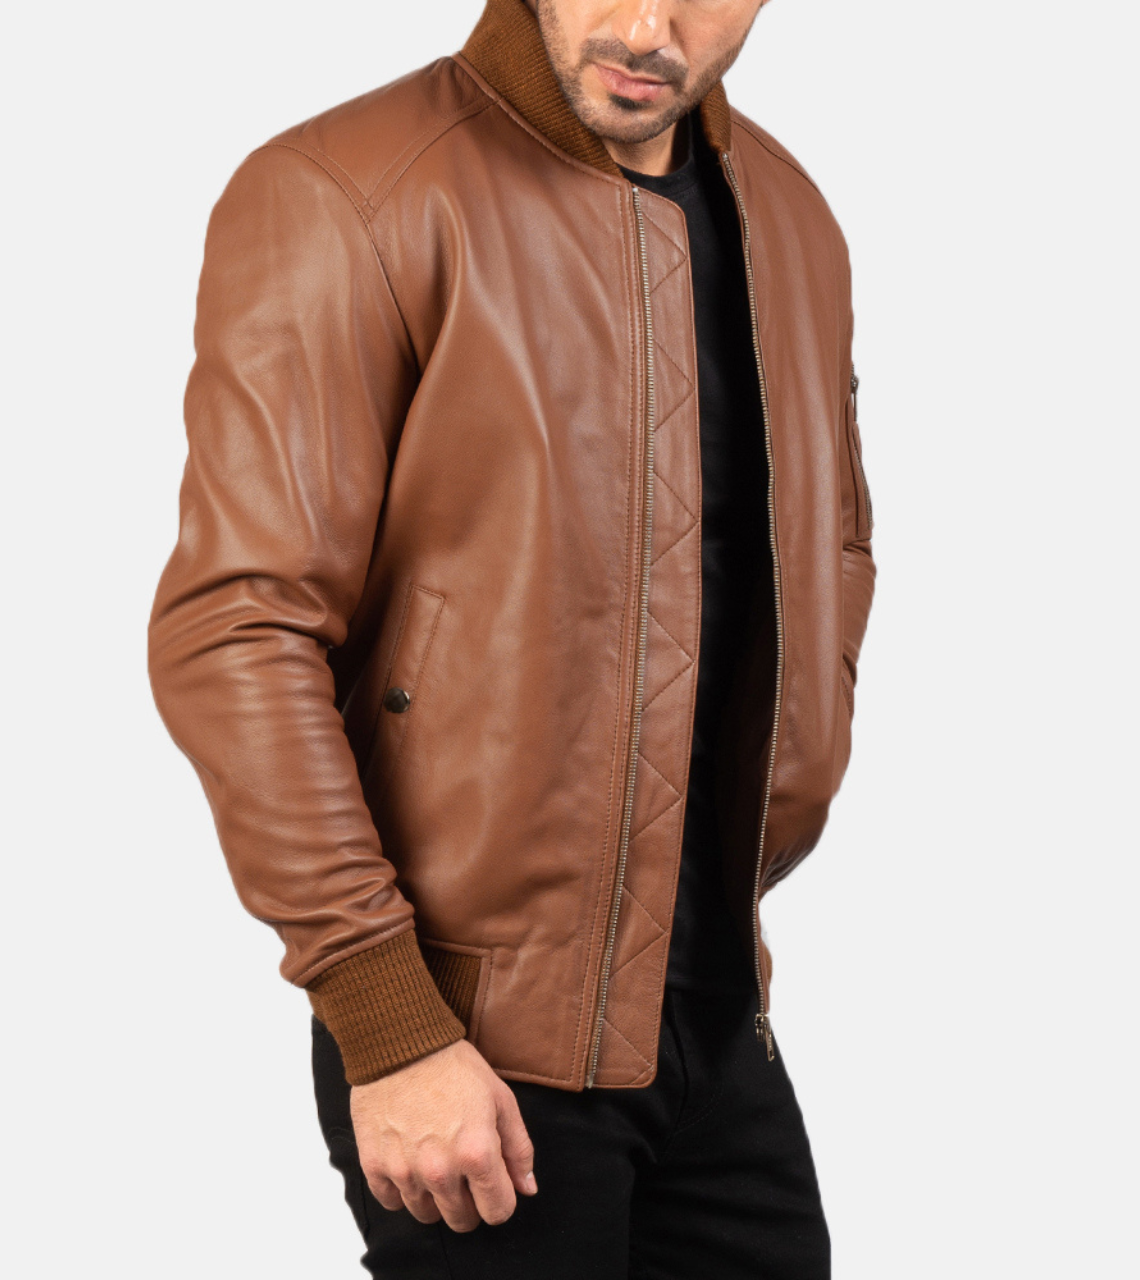 Bouvet Men's Leather Bomber Jacket